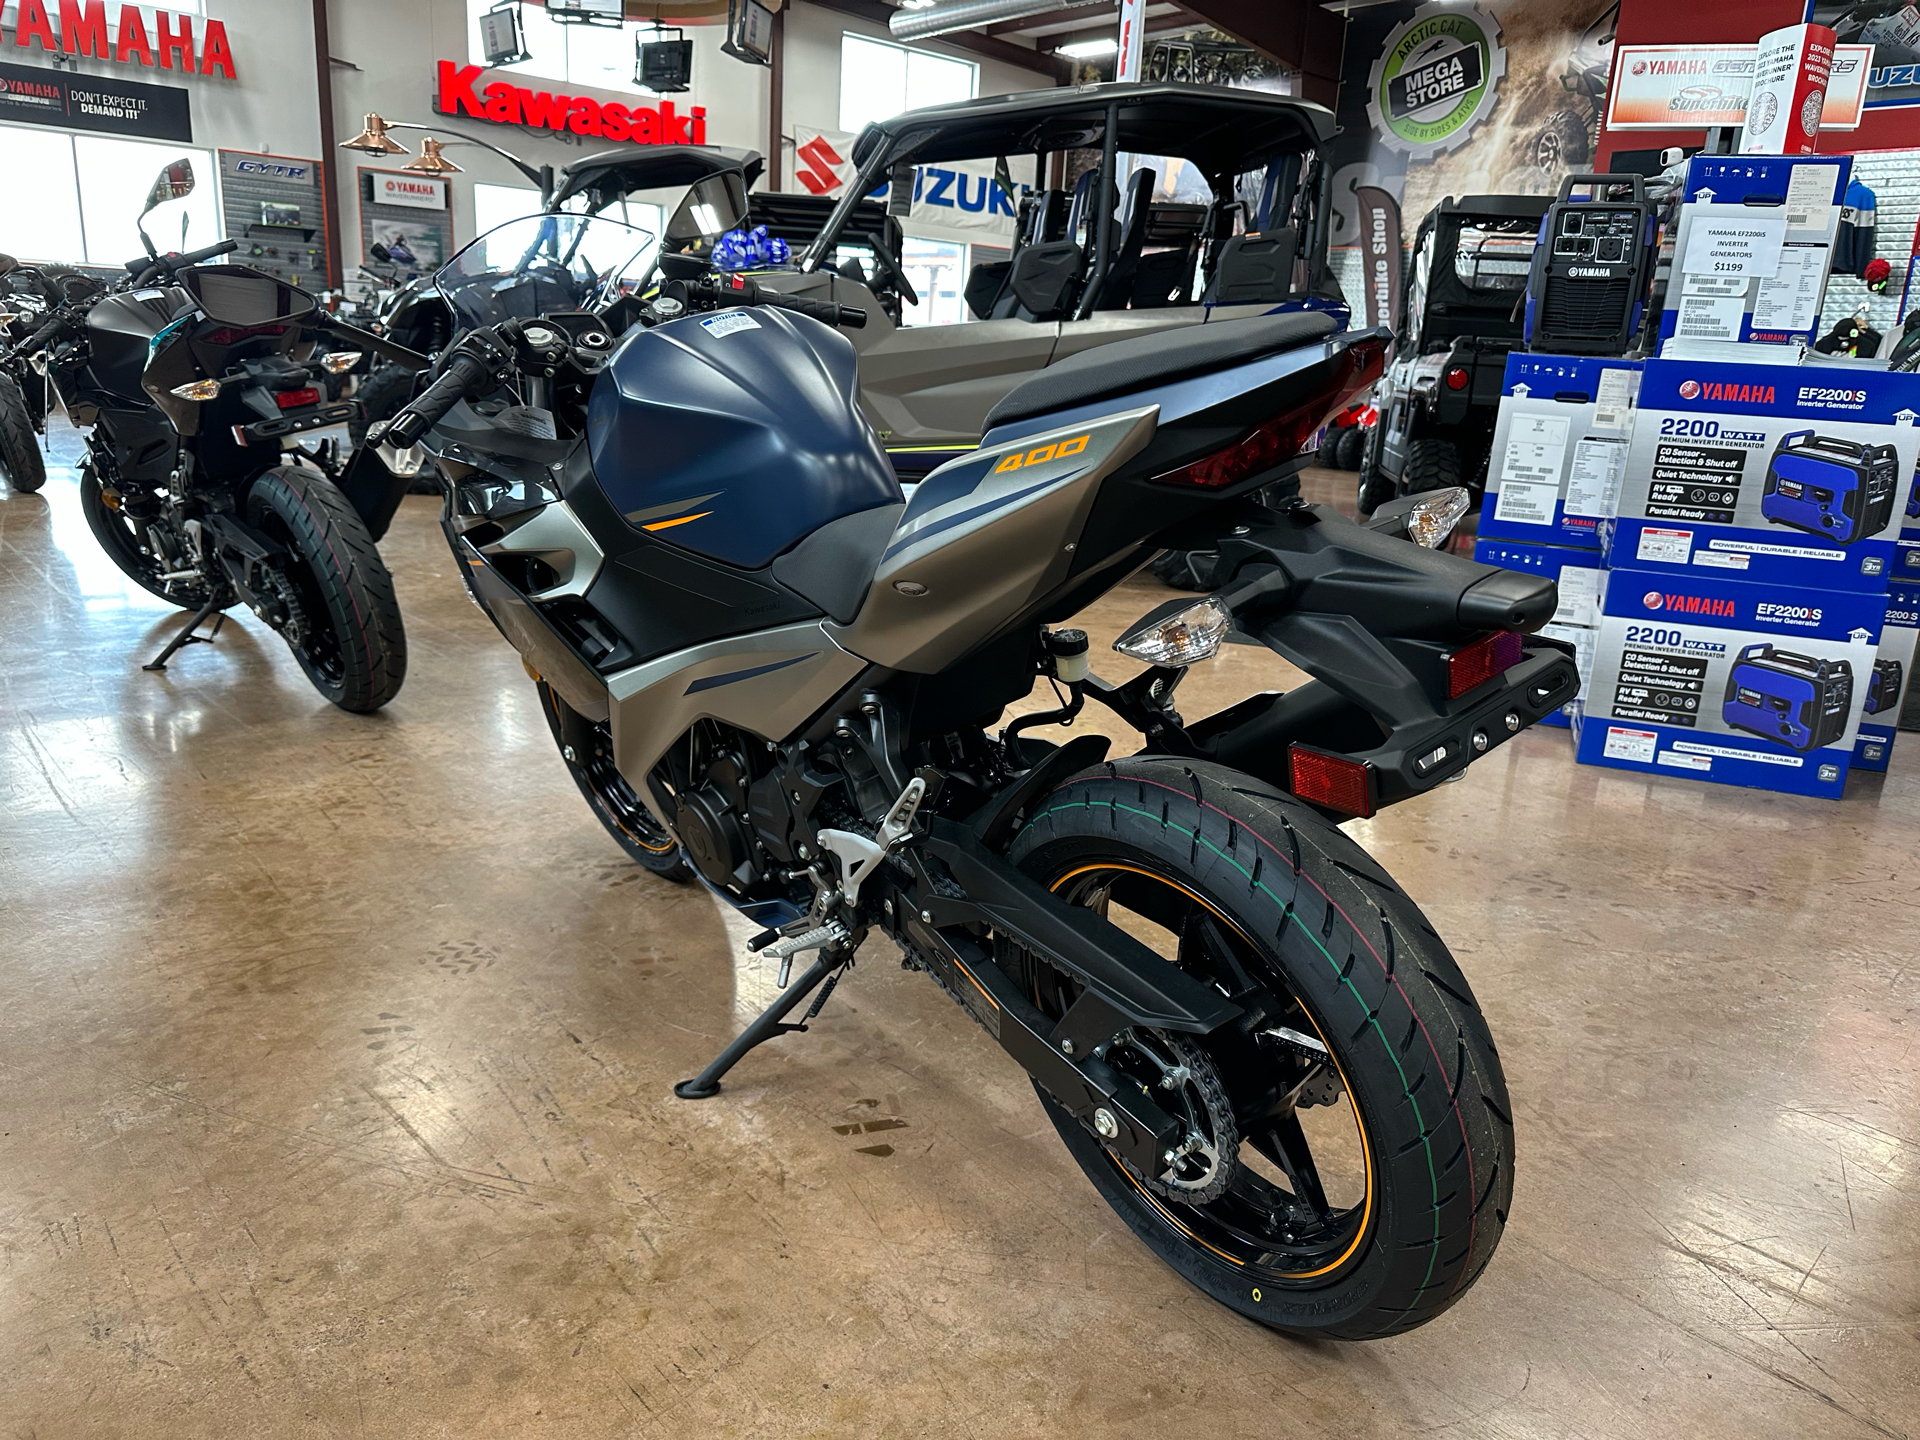 2023 Kawasaki Ninja 400 in Evansville, Indiana - Photo 5